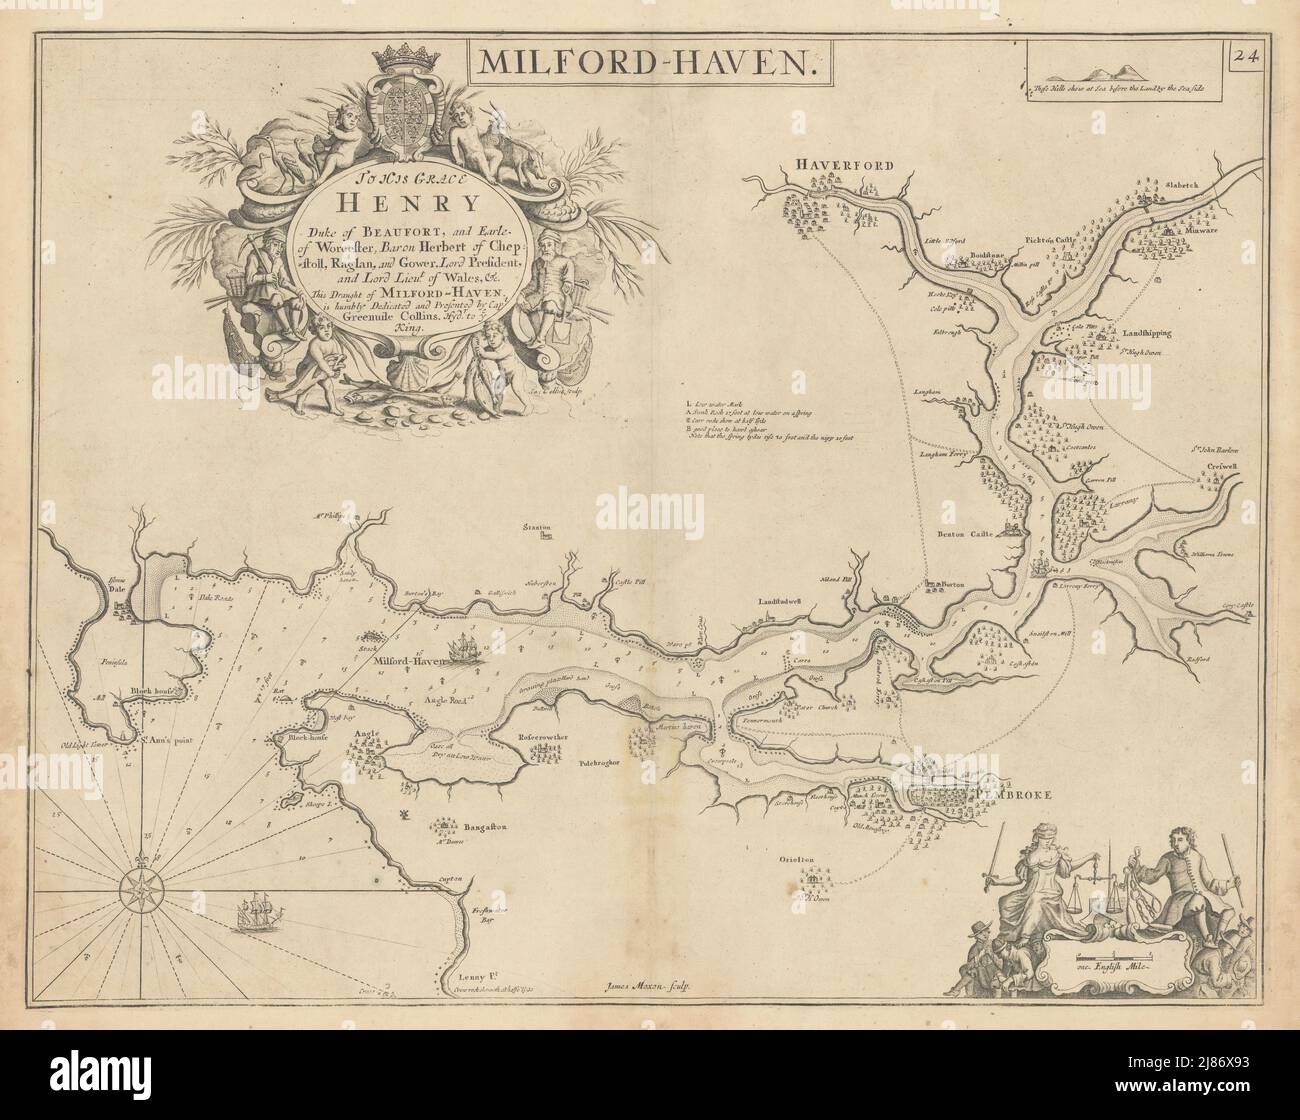 Carte de la mer de Milford Haven. Haverfordwest Pembrokeshire. COLLINS 1723 vieille carte Banque D'Images